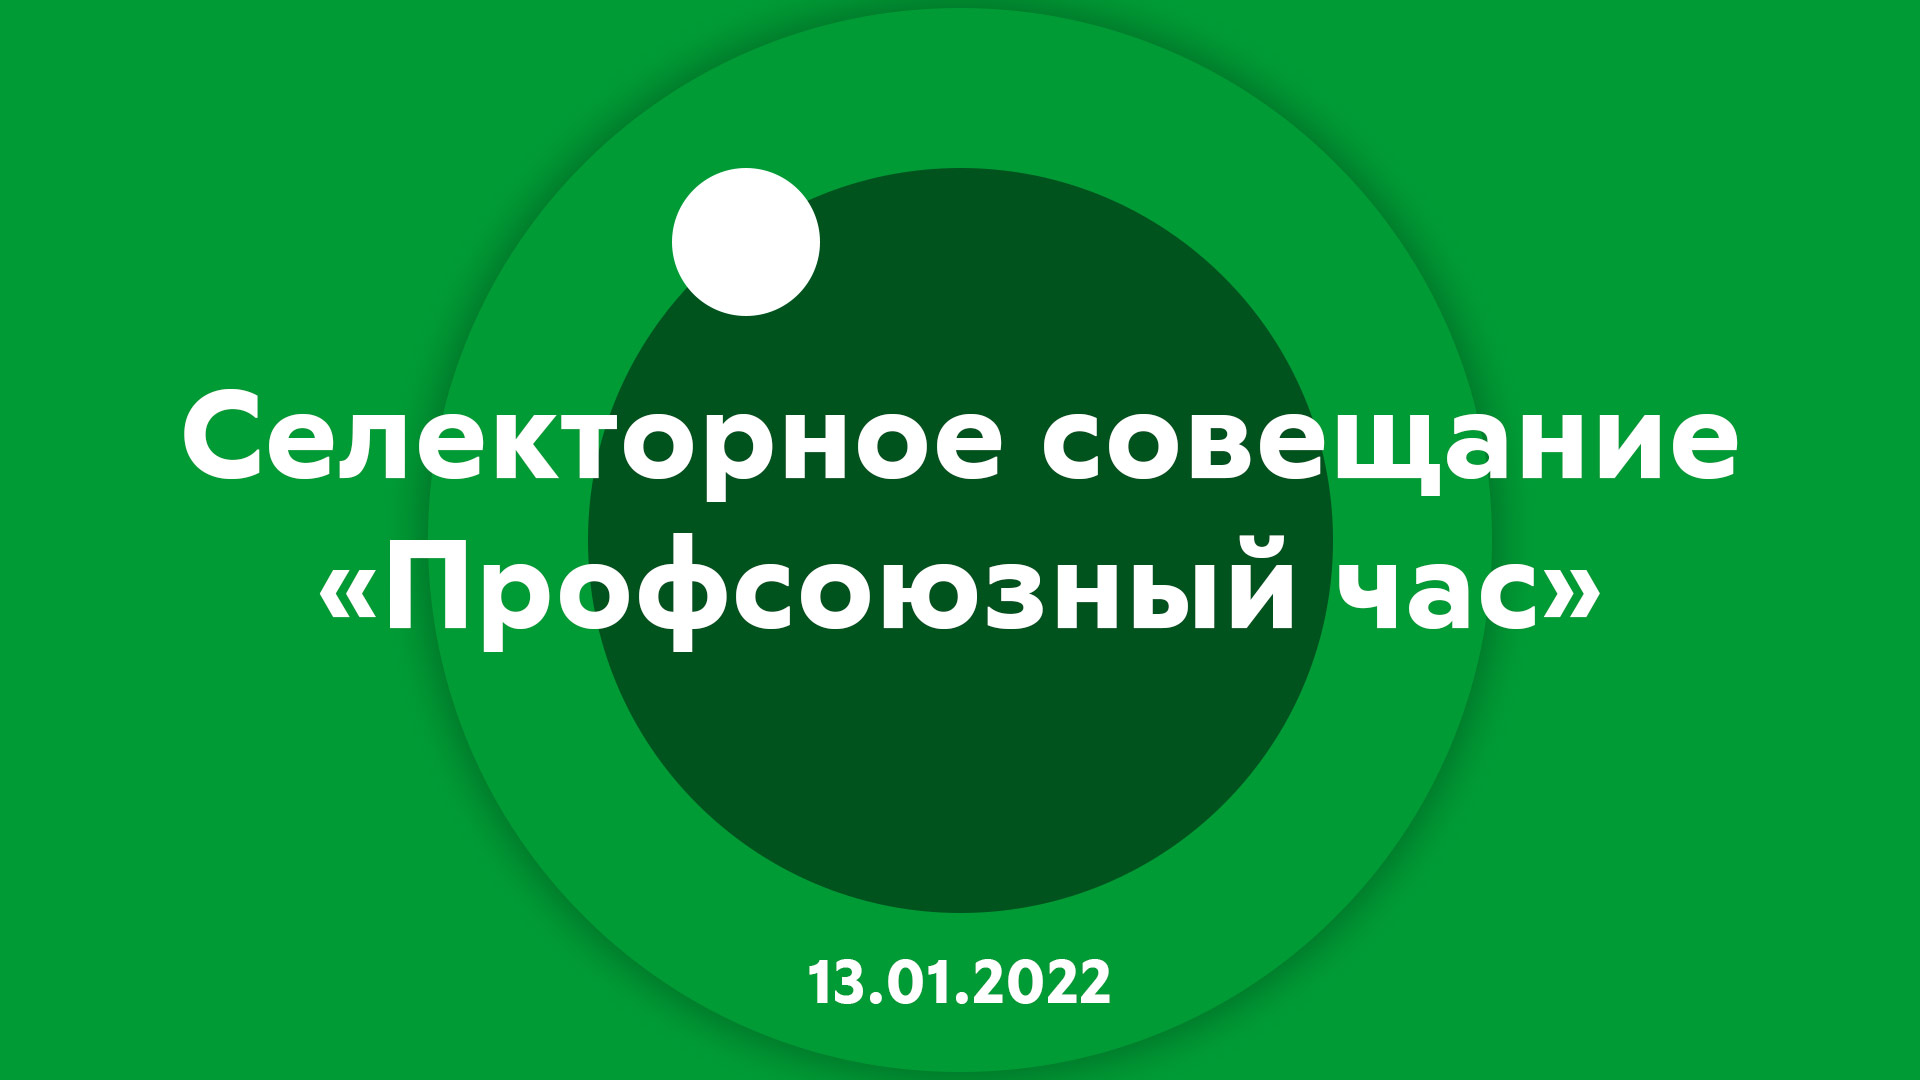 Селекторное совещание "Профсоюзный час" 13.01.2022